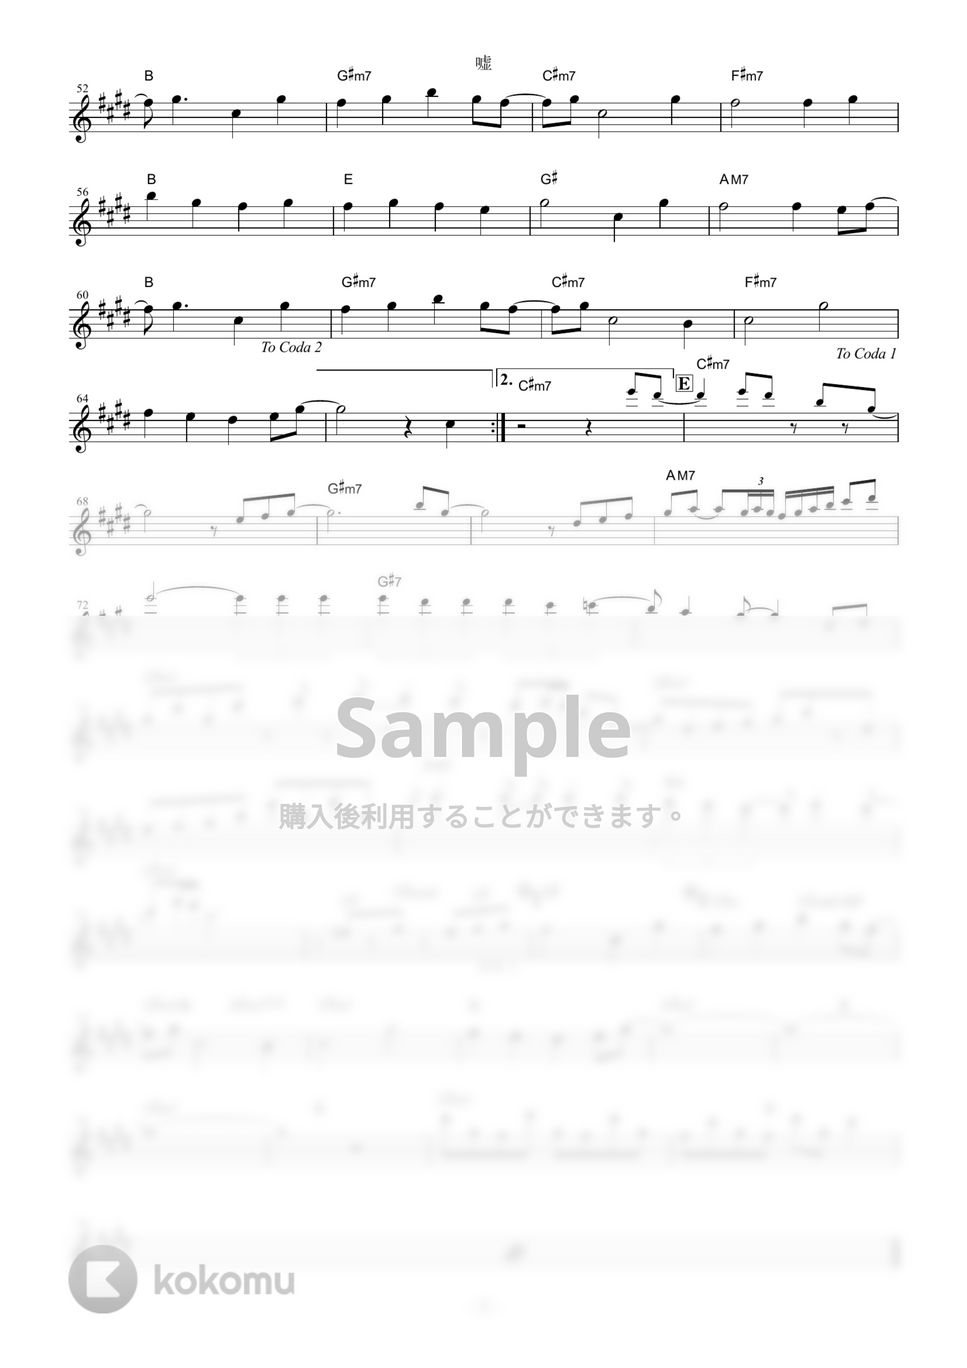 シド - 嘘 (『鋼の錬金術師 FULLMETAL ALCHEMIST』 / in Bb) by muta-sax